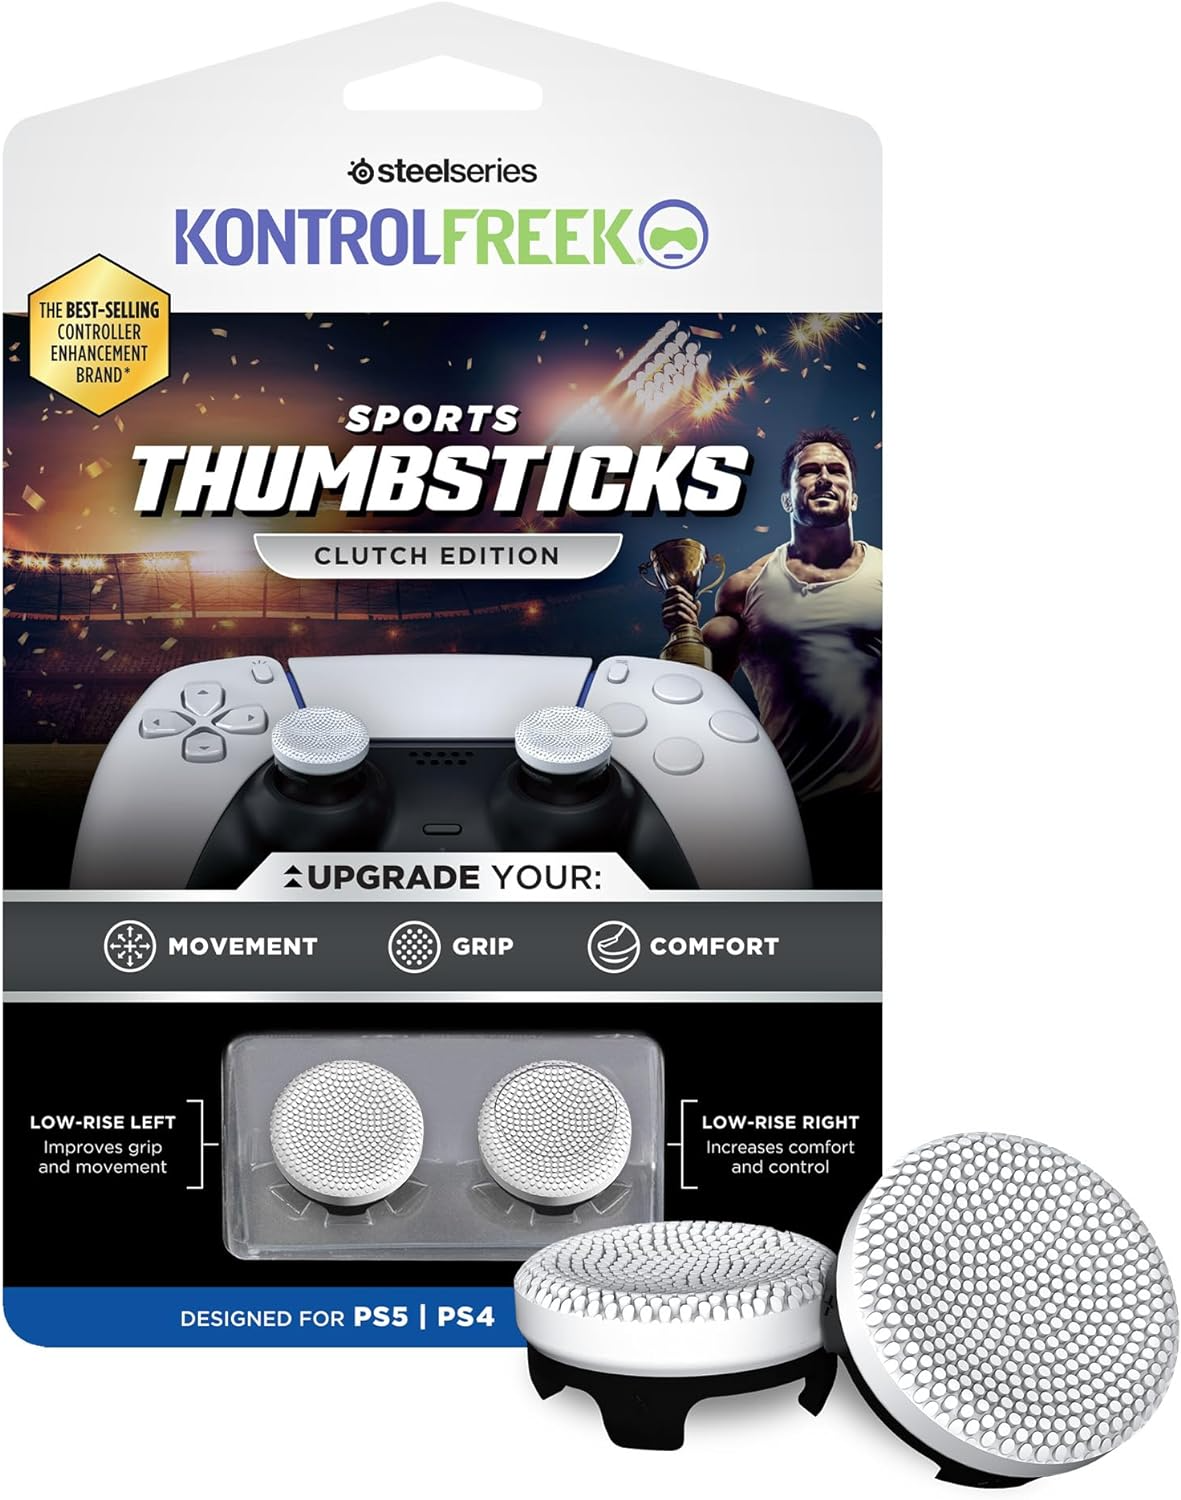 Extenseur de poignée pour manette PS5/PS4 Steelseries - KontrolFreek Sports -Clutch edition - noir et blanc - kit de 2